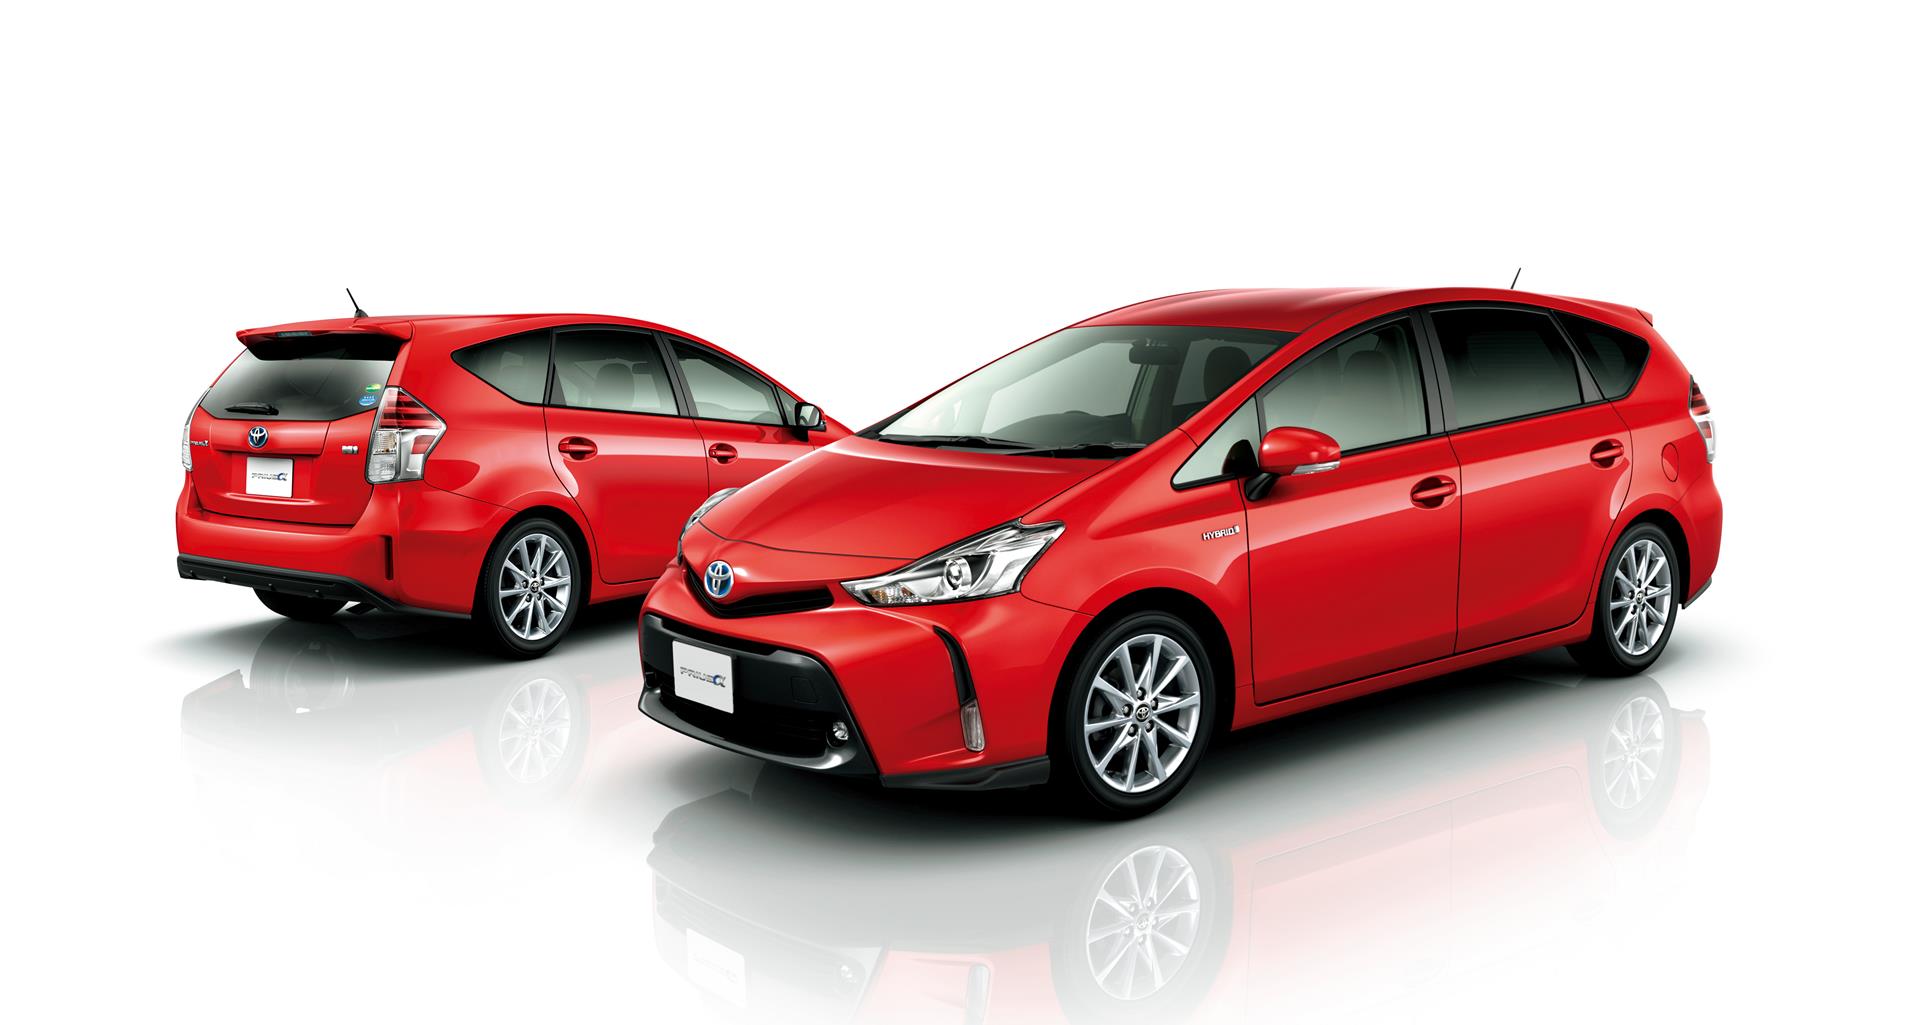 Toyota プリウスaをマイナーチェンジ トヨタ グローバルニュースルーム トヨタ自動車株式会社 公式企業サイト